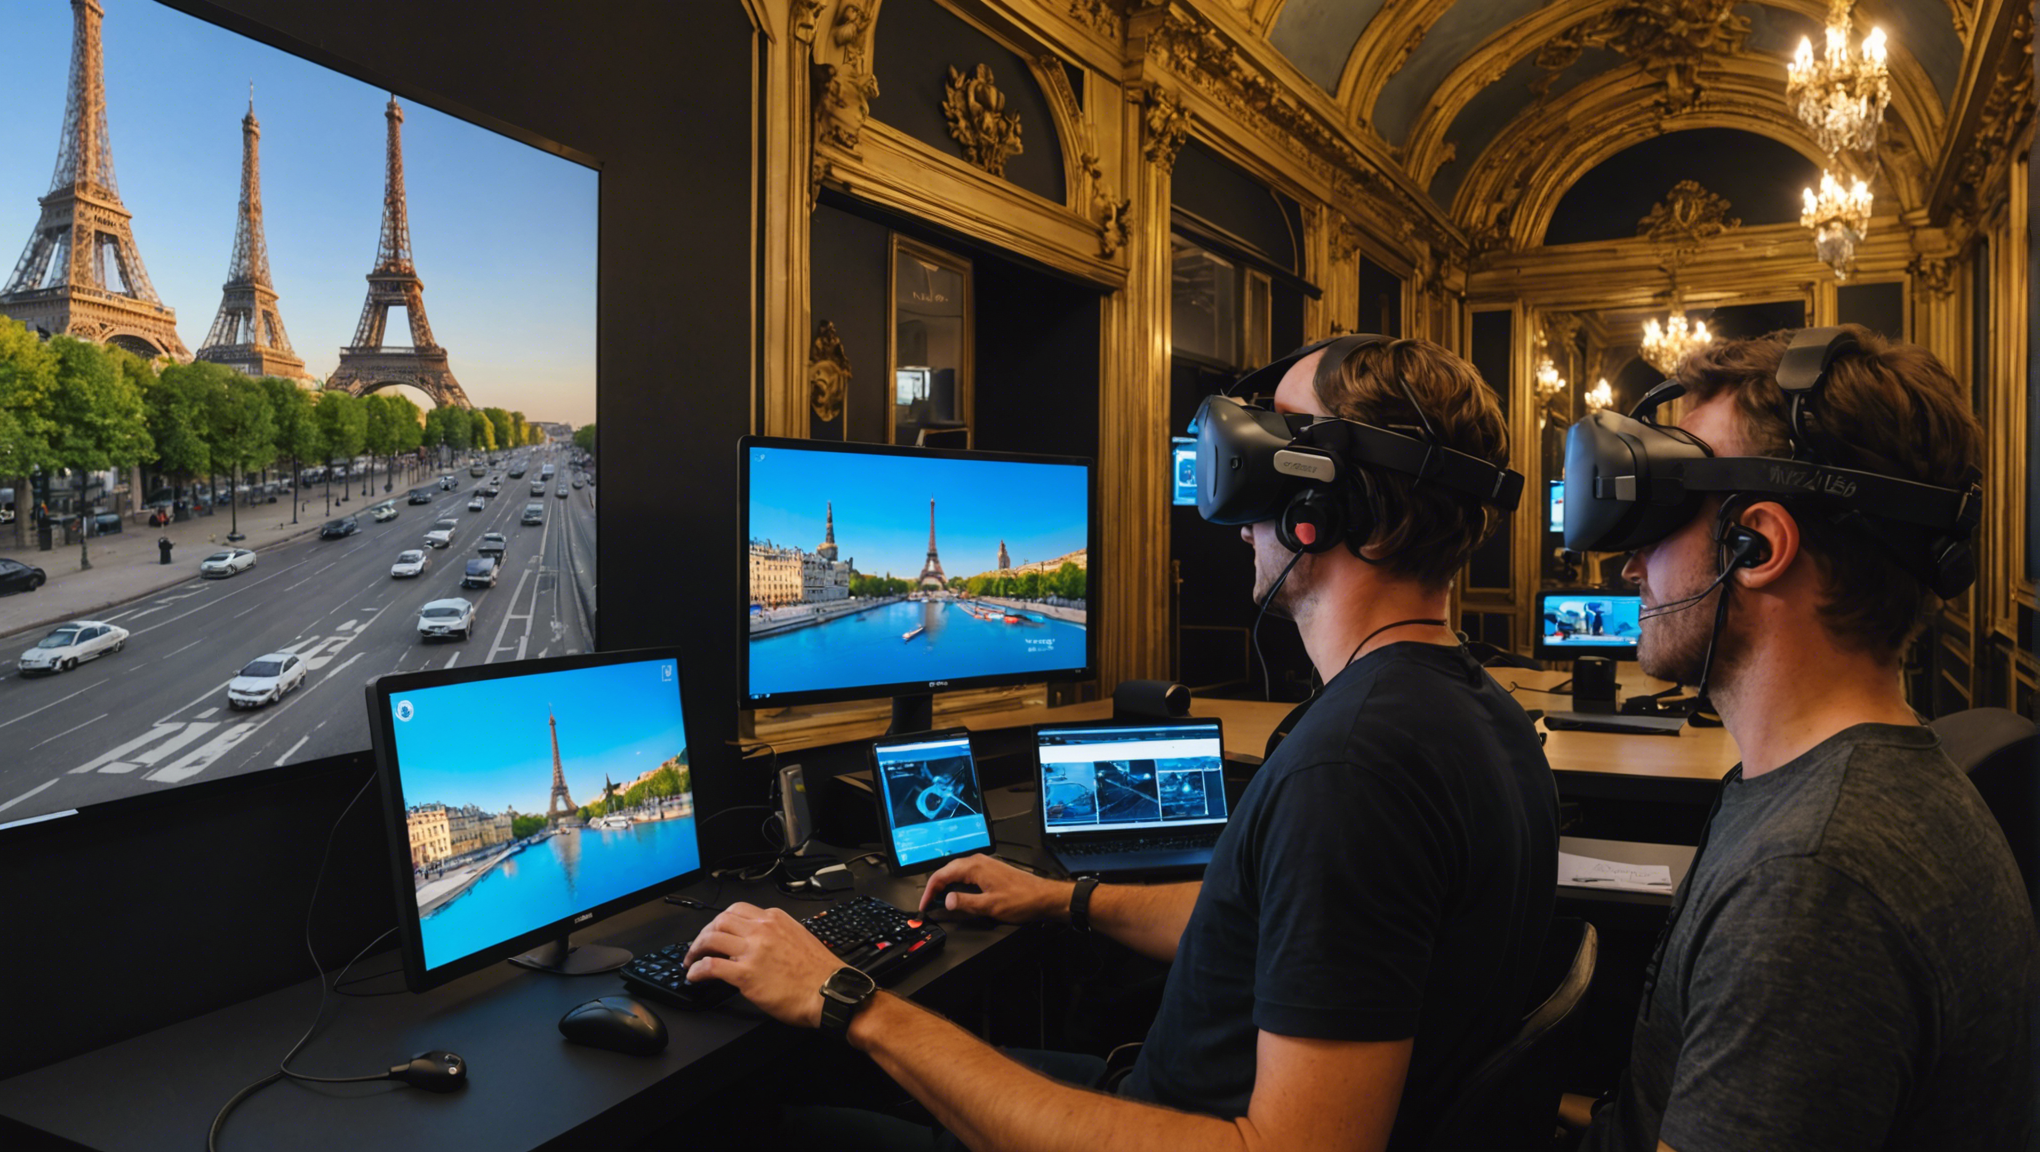 découvrez comment transformer vos réunions parisiennes grâce à notre simulateur de réalité virtuelle en location ! offrez une expérience immersive unique à vos participants.